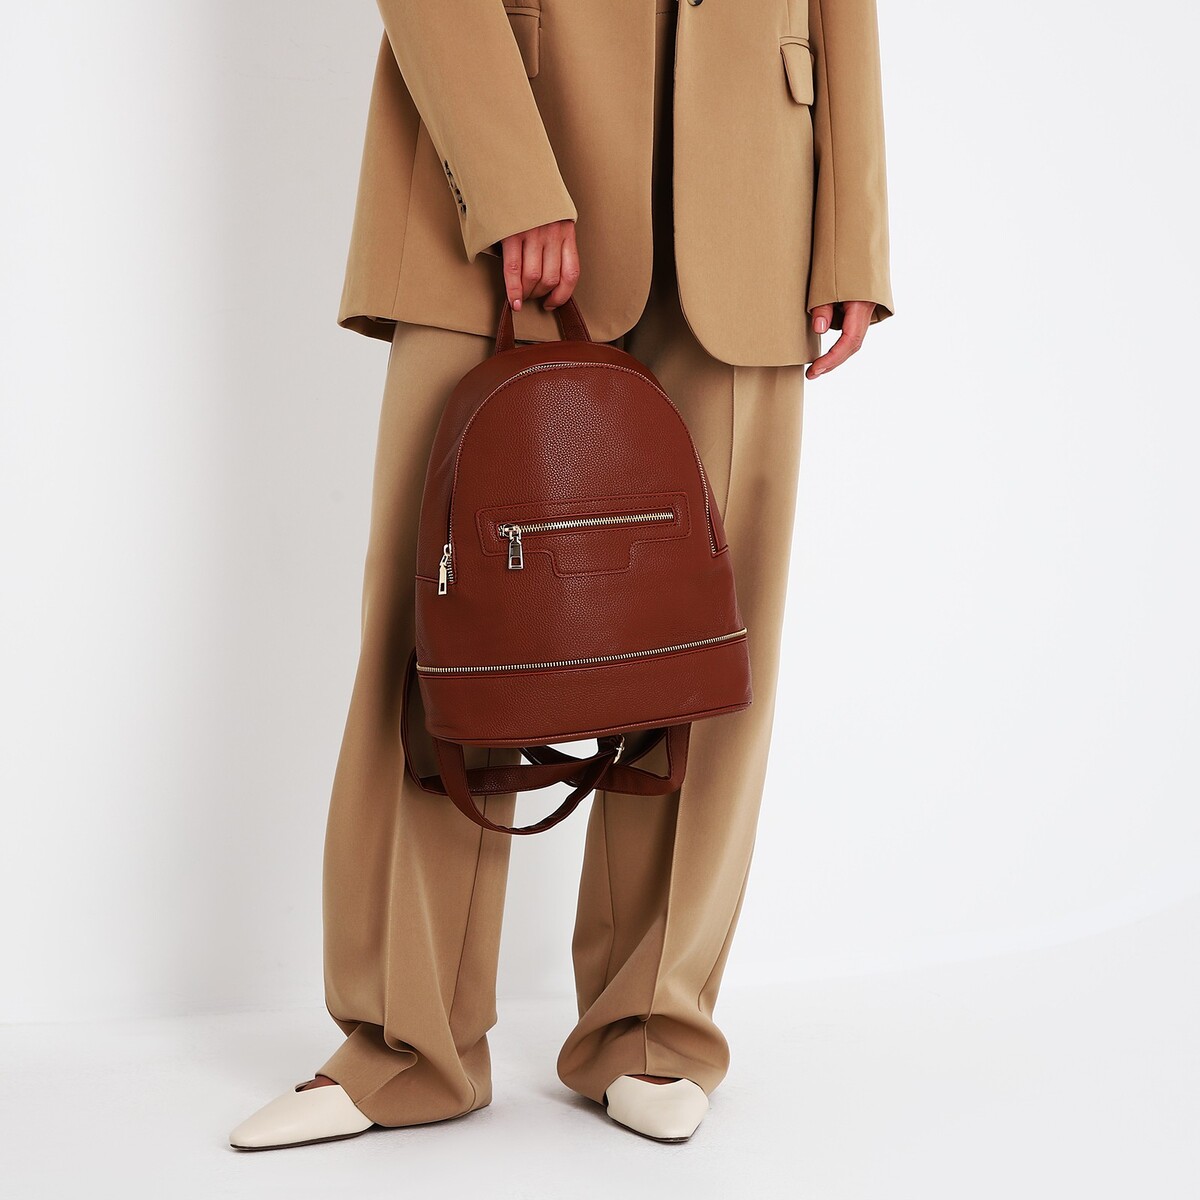 Рюкзак женский из искусственной кожи на молнии, 1 карман, цвет коричневый рюкзак школьный из текстиля на молнии наружный карман коричневый